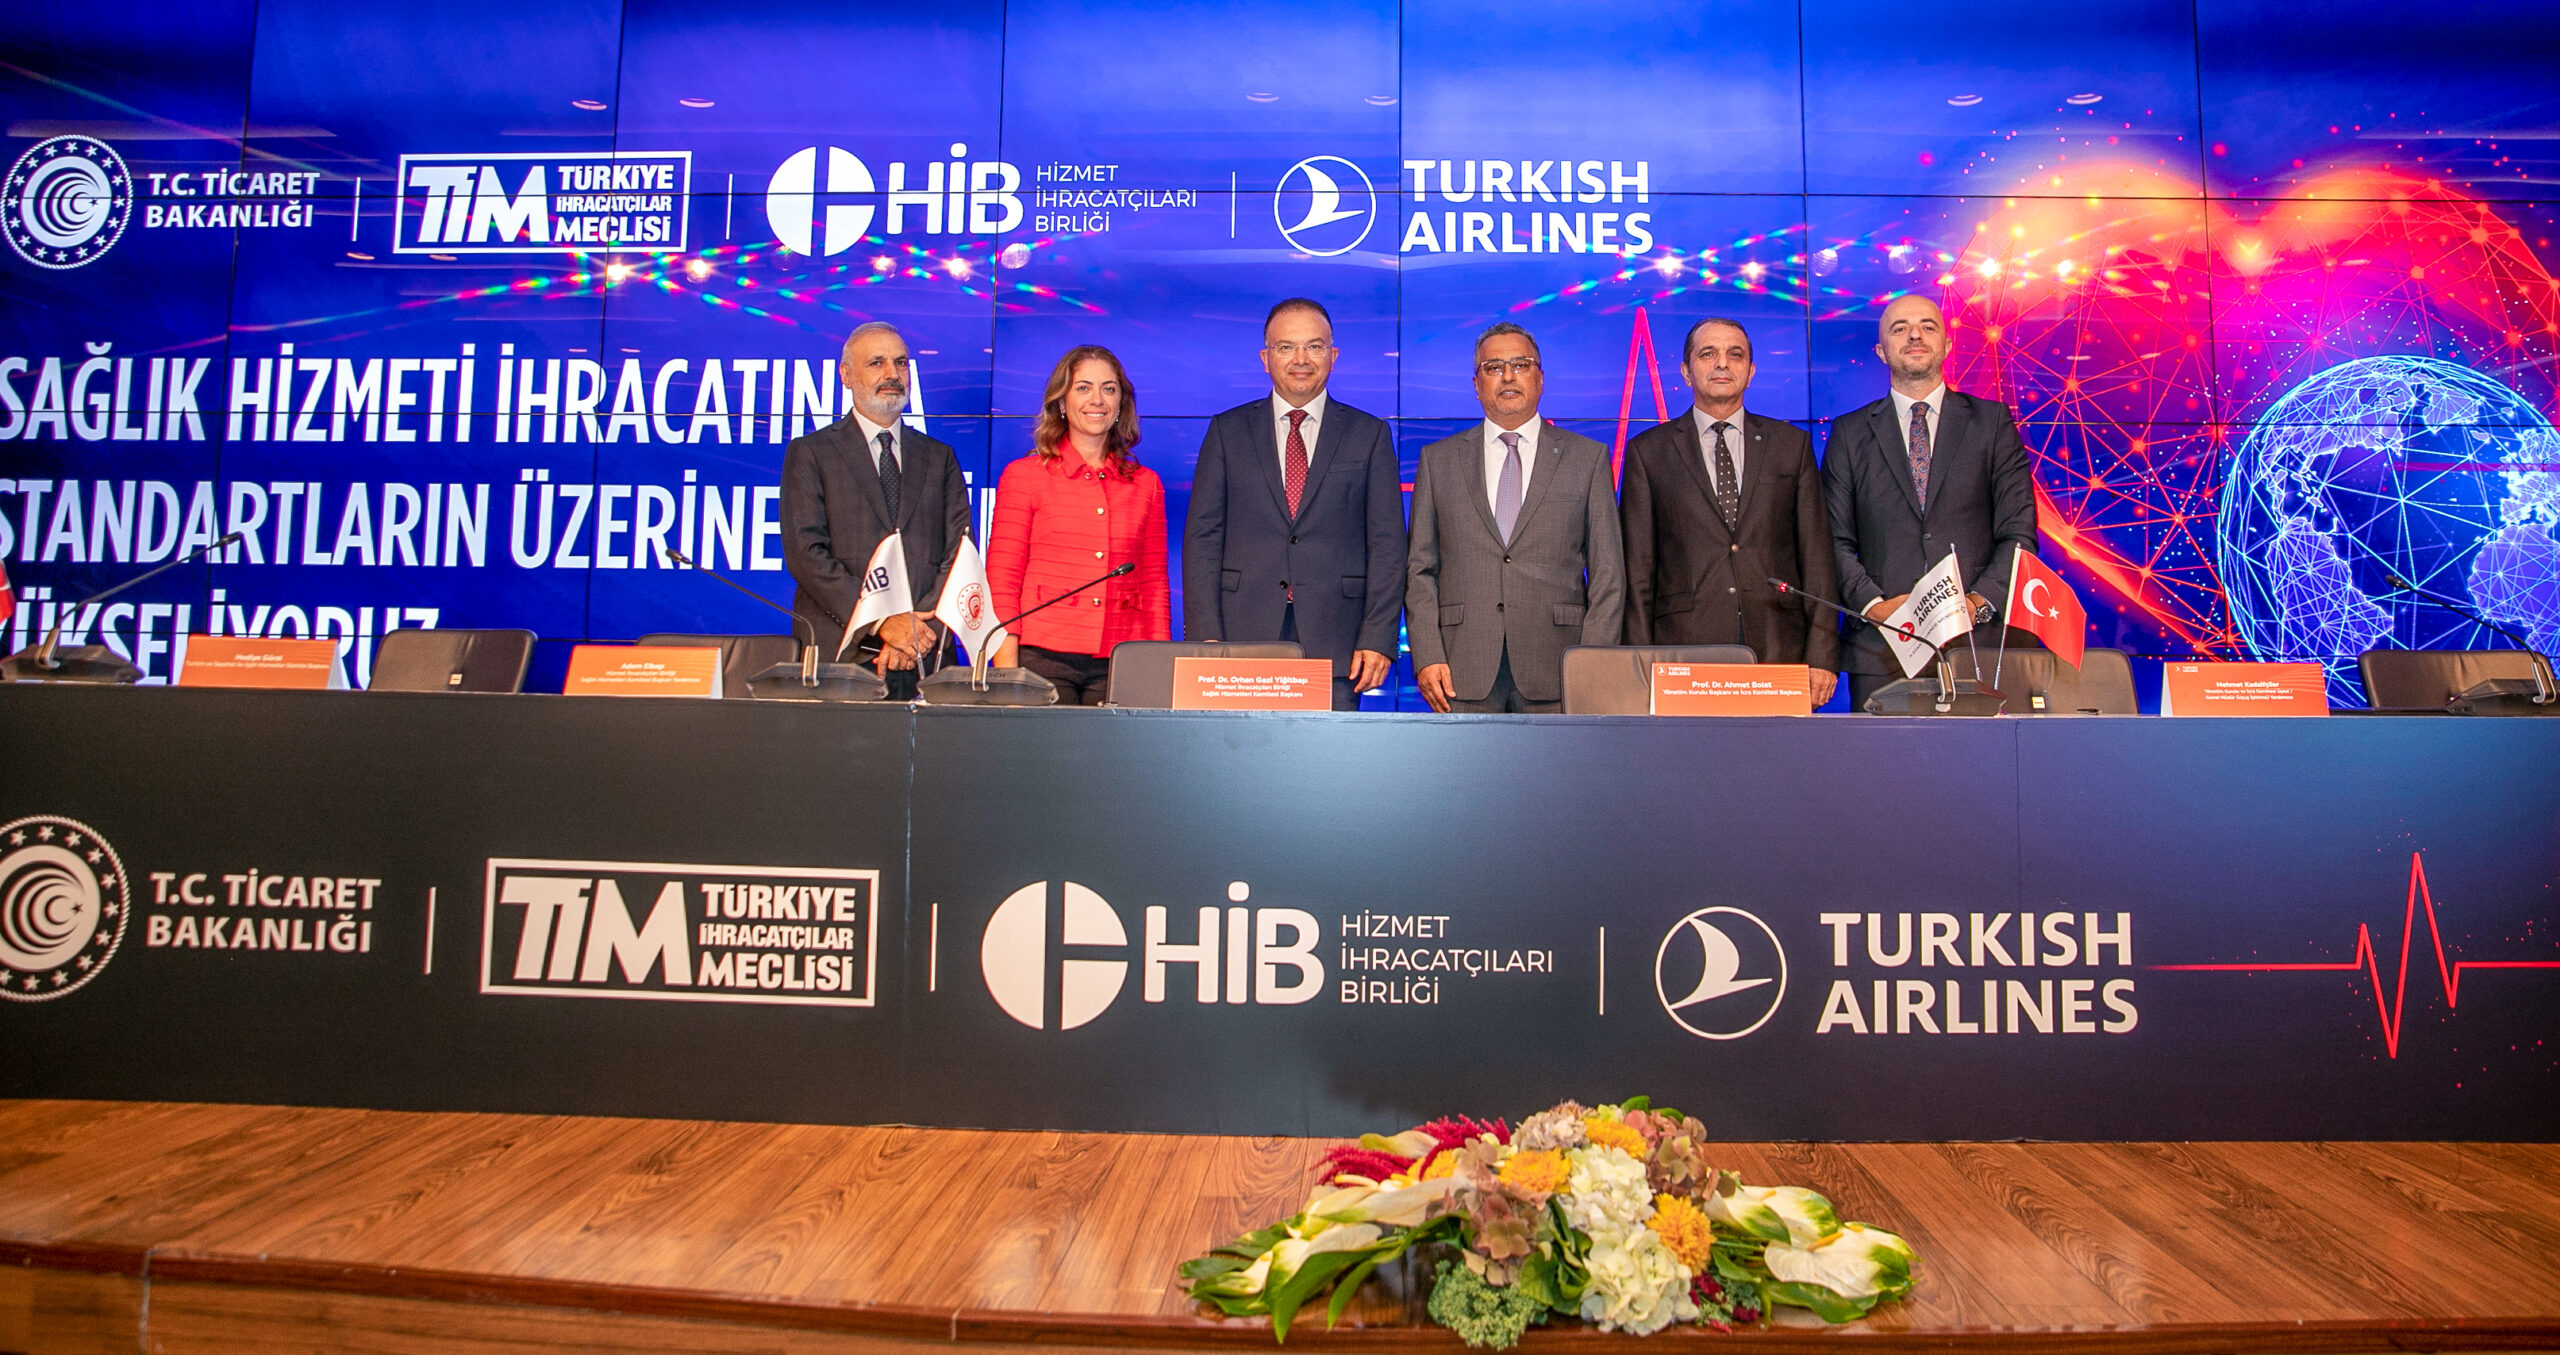 Türk Hava Yolları ve Hizmet İhracatçıları Birliği, sağlık sektöründe dünya liderliği için buluştu.